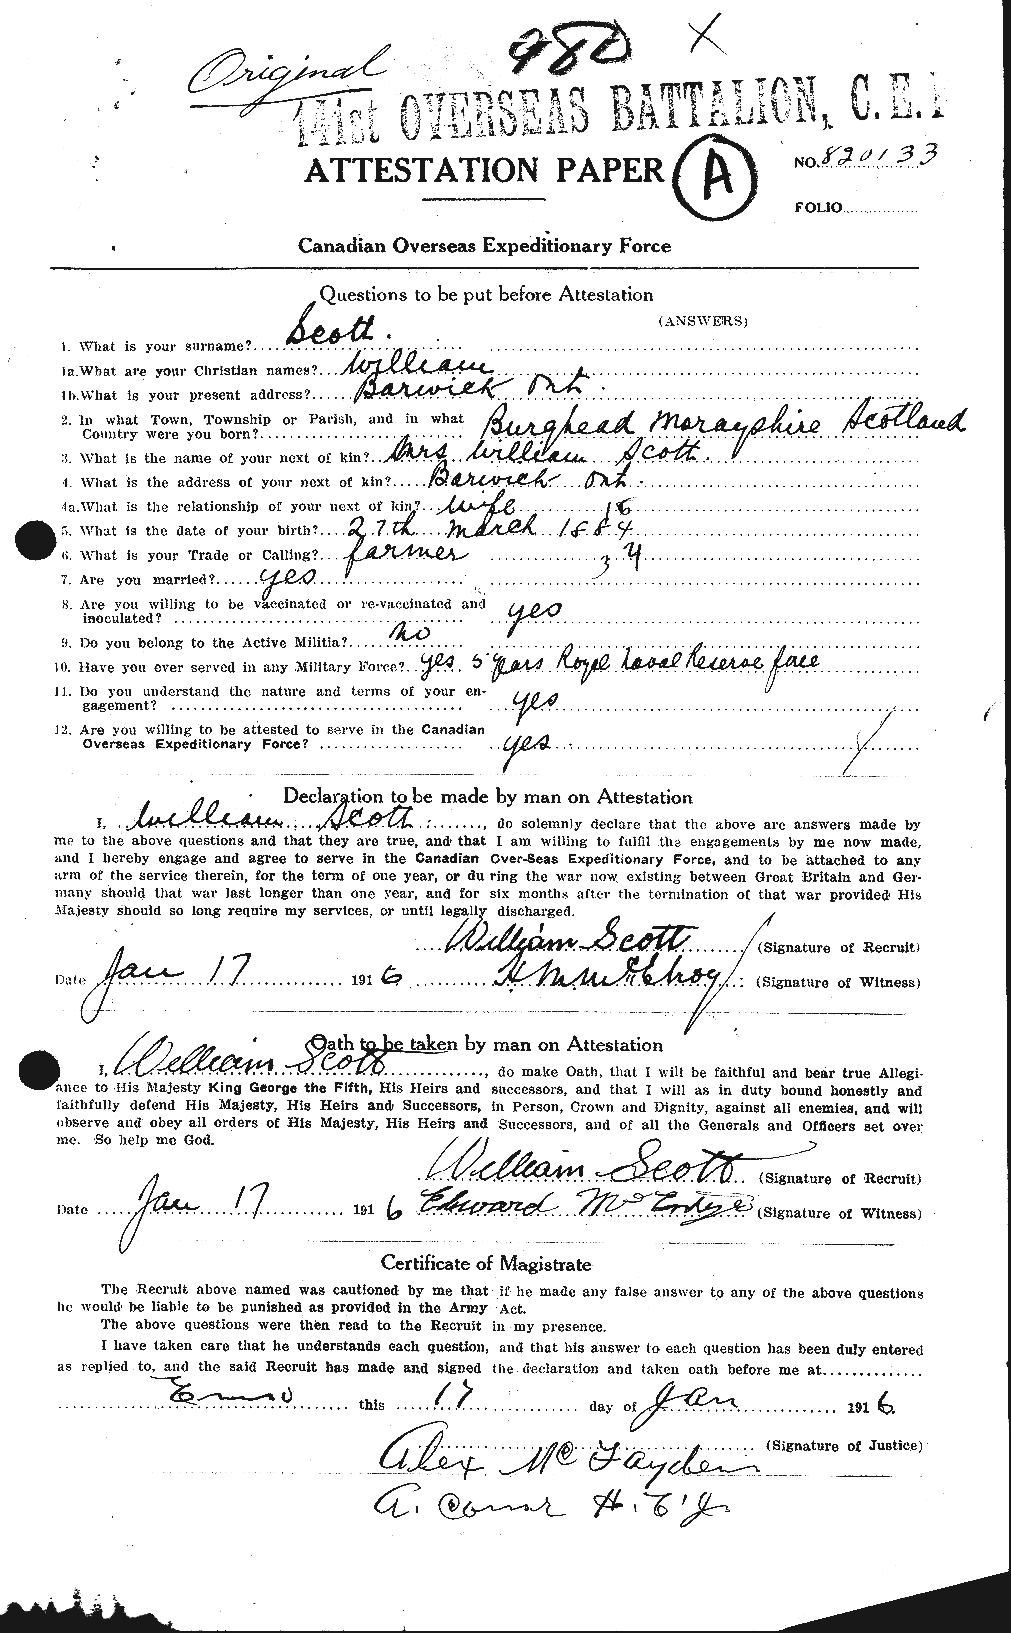 Dossiers du Personnel de la Première Guerre mondiale - CEC 087647a